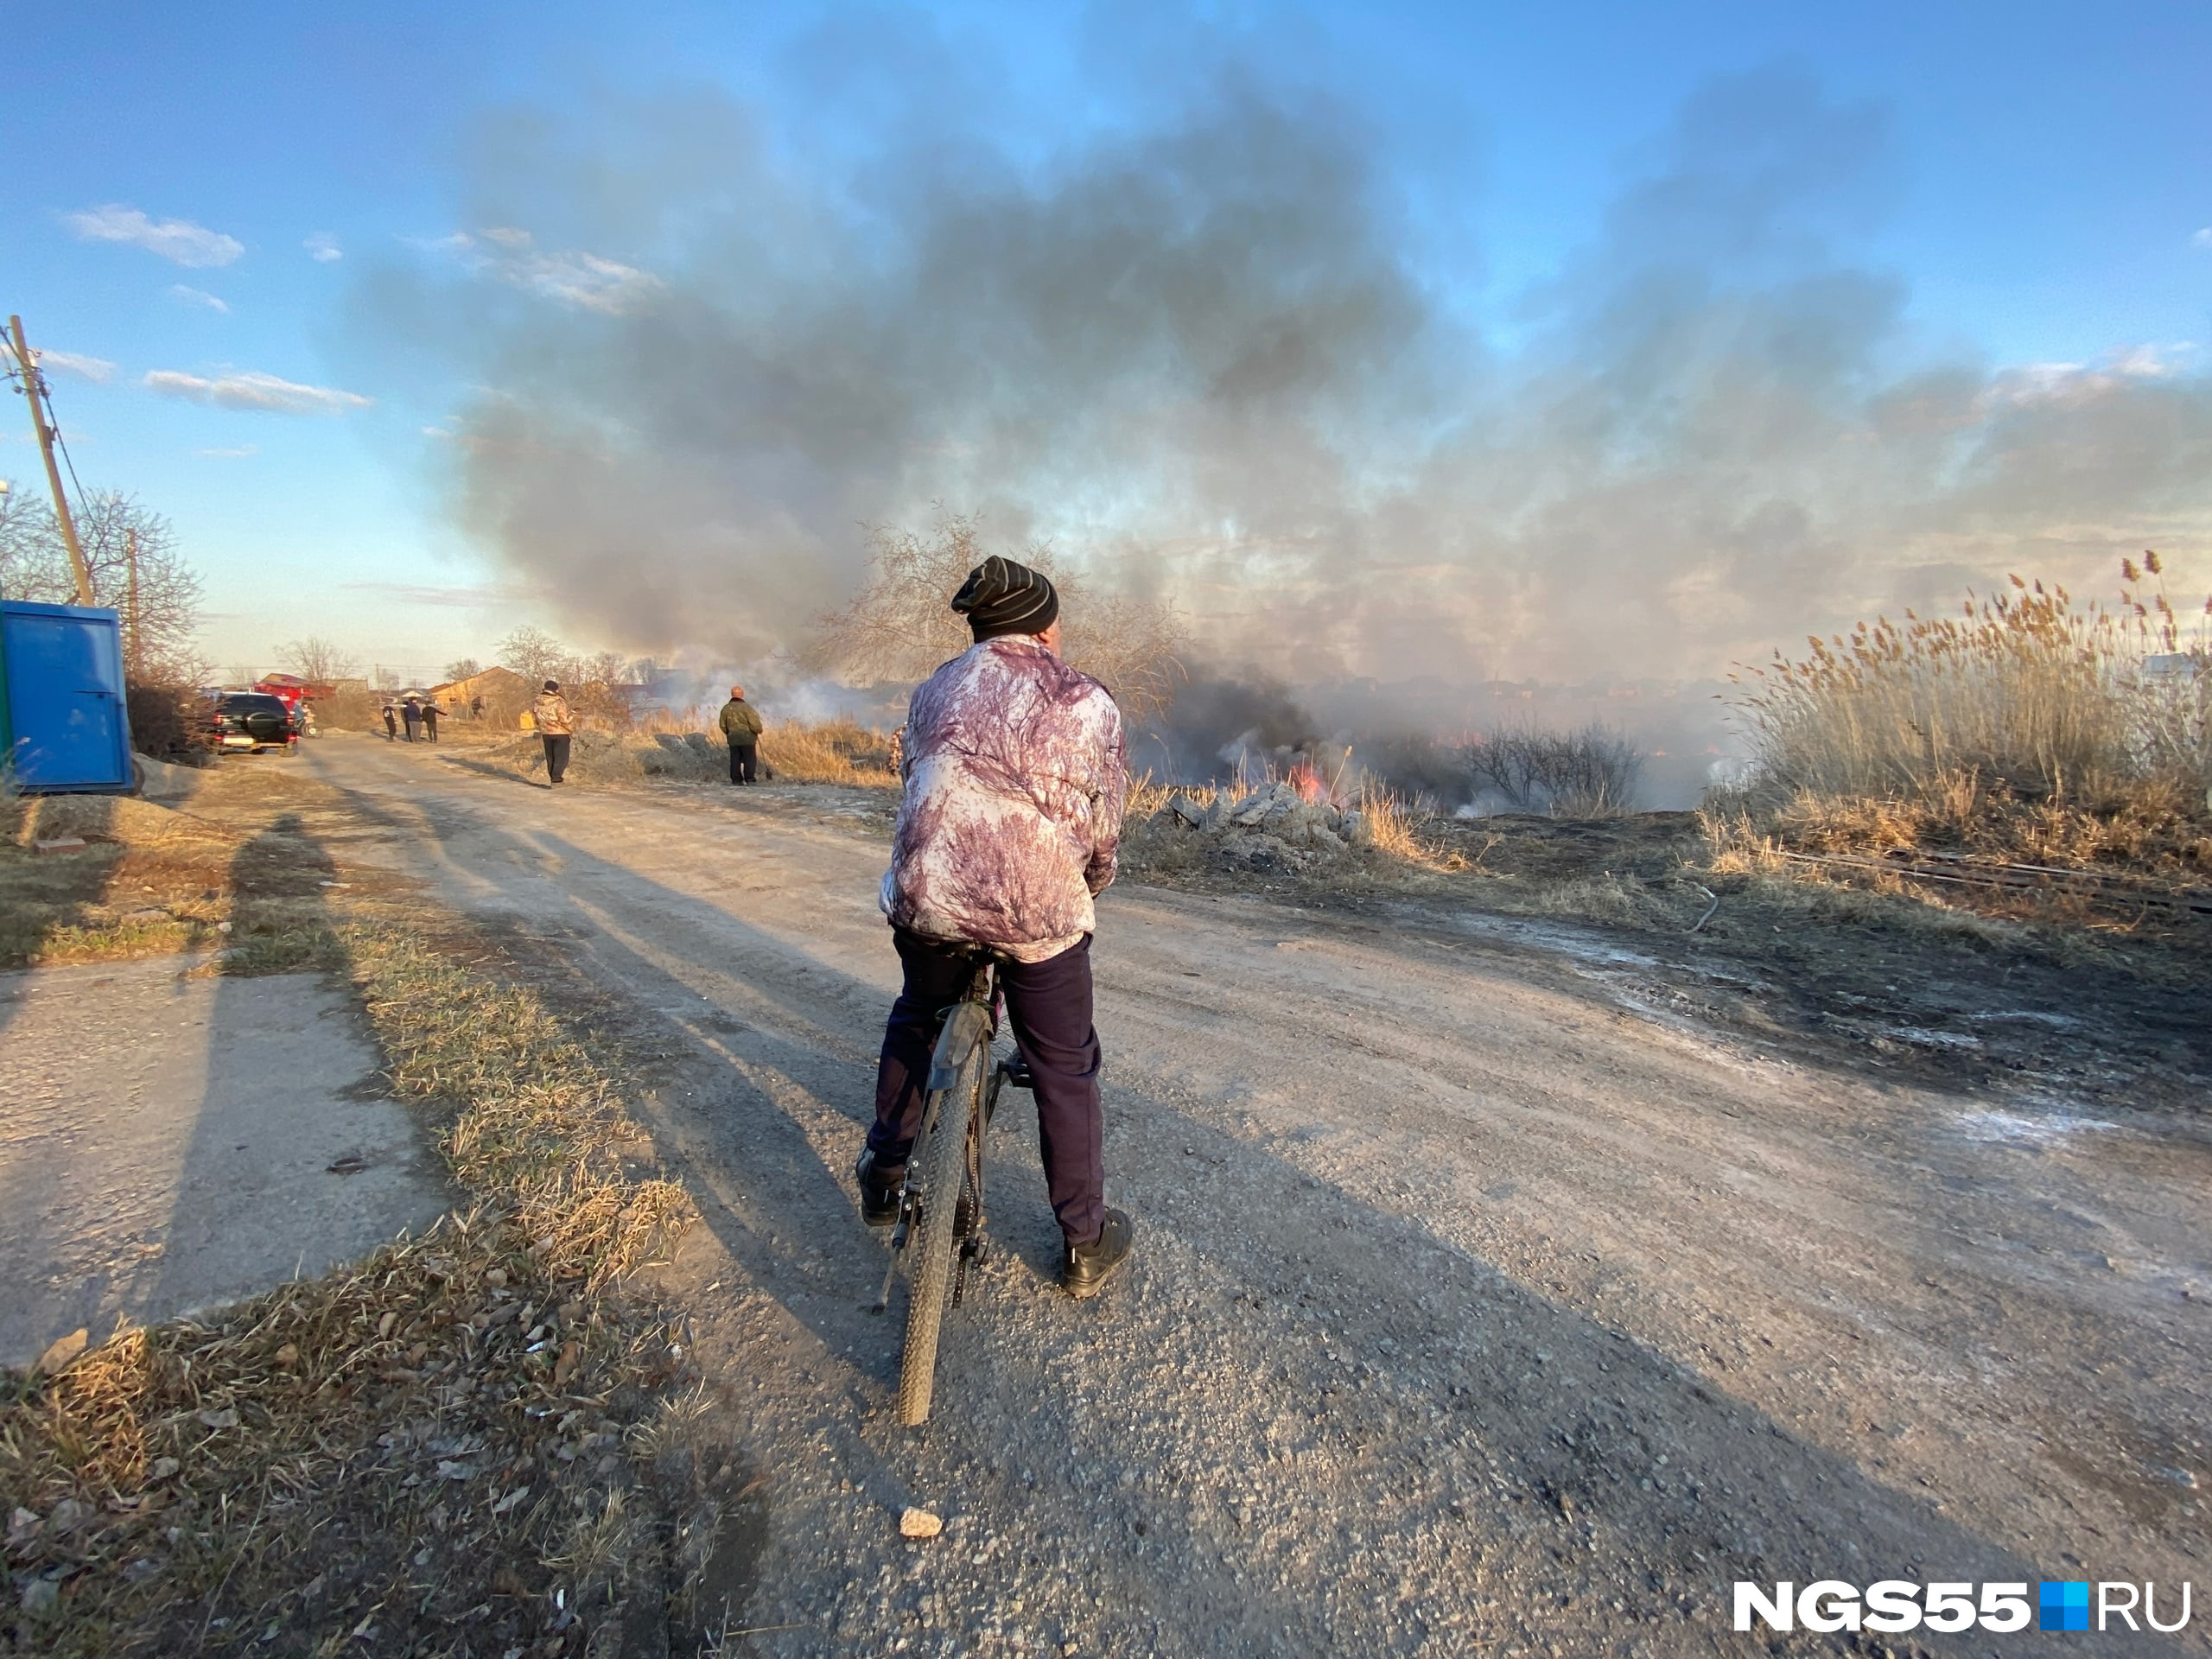 Судя по фото, камыш и трава горели рядом с частником. Однако в региональном МЧС корреспонденту NGS55.RU пояснили, что угрозы перехода огня на дома не было